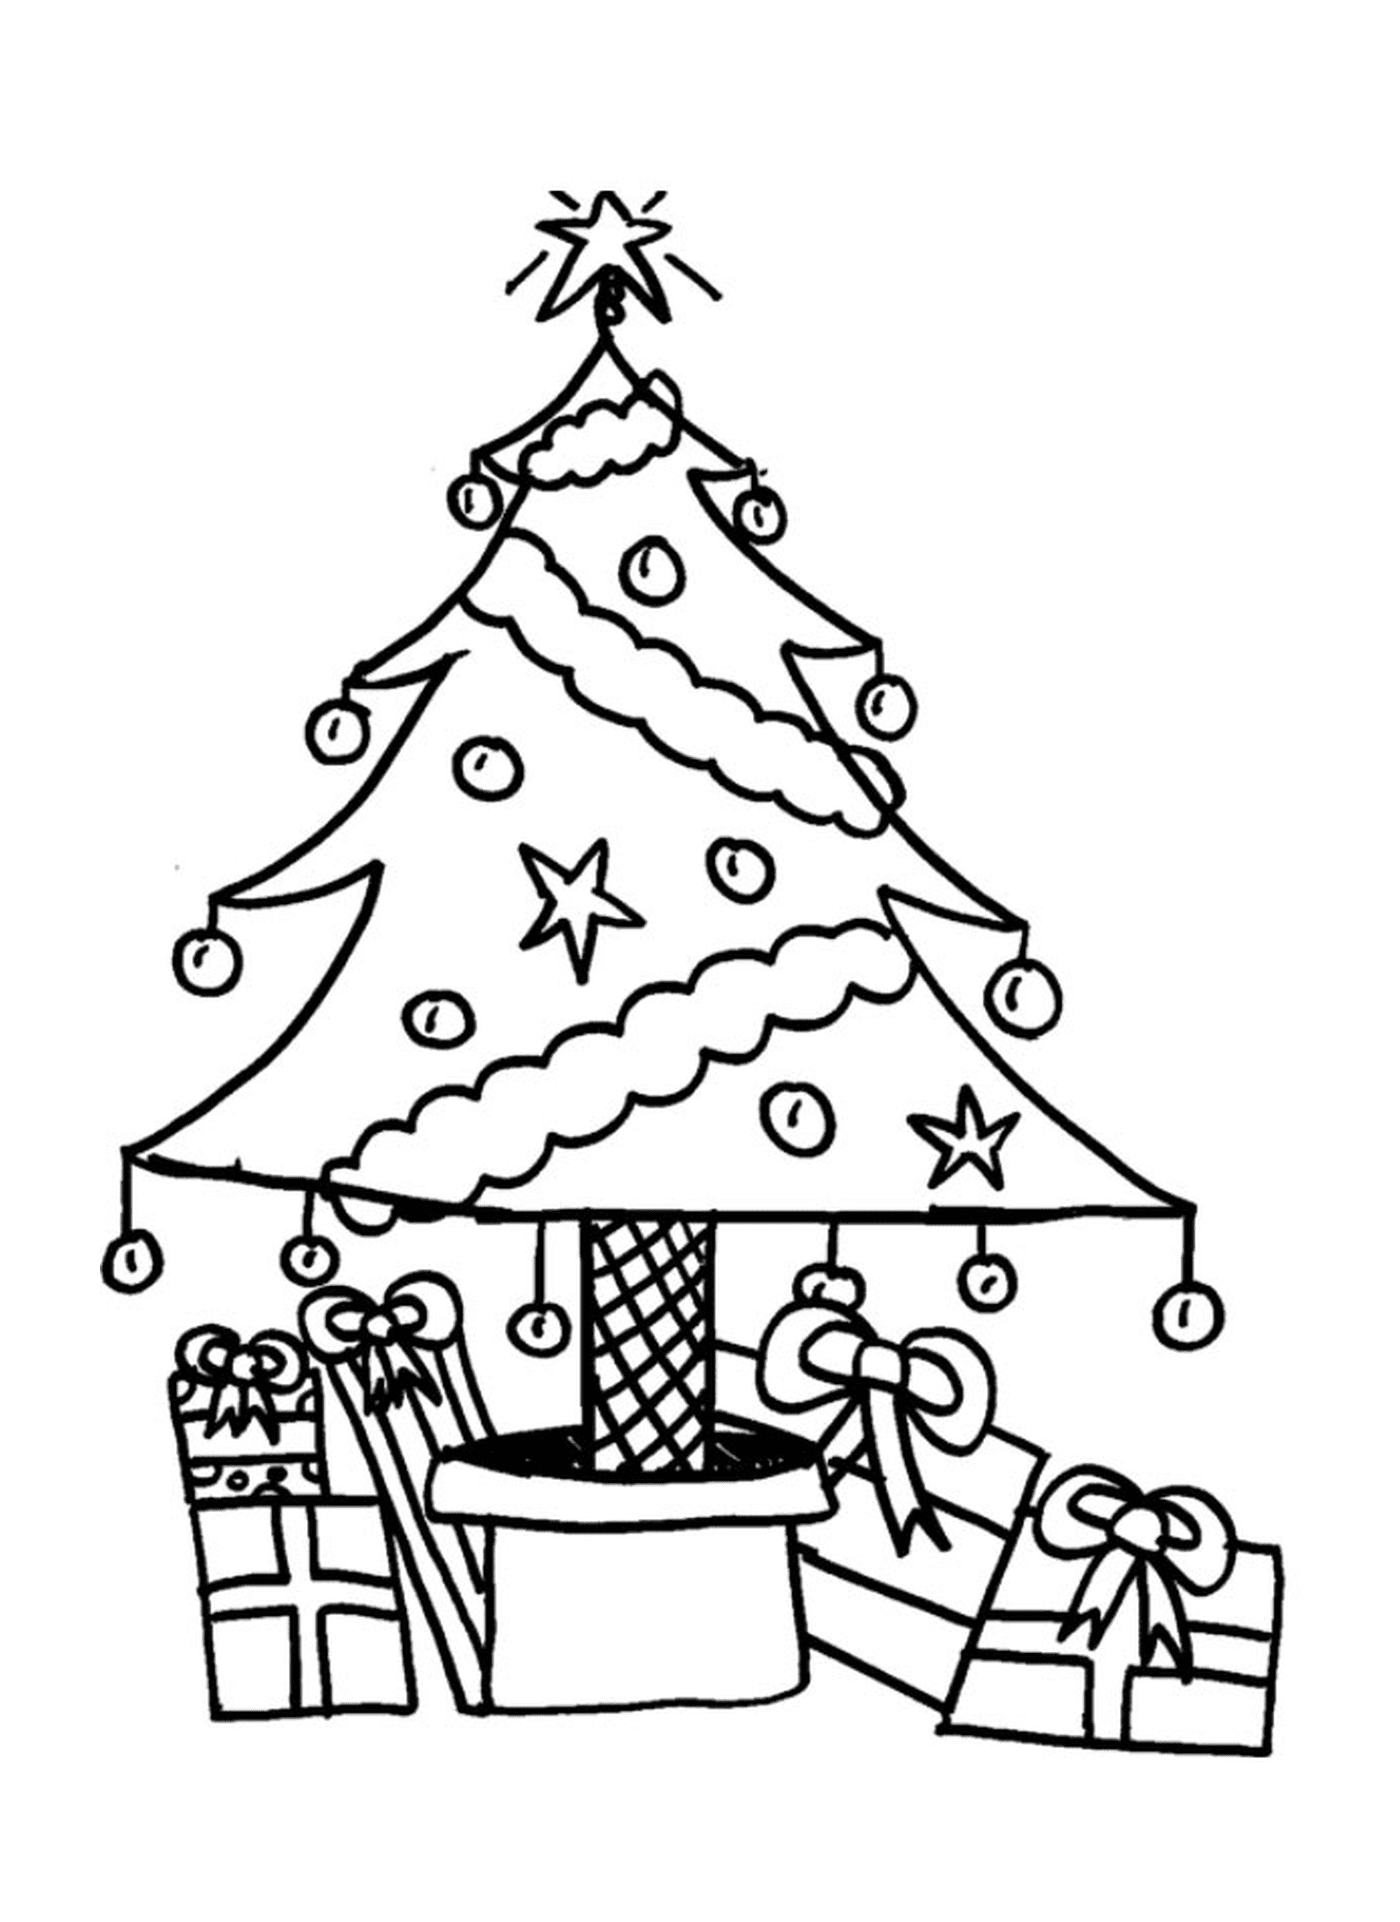  Ein Weihnachtsbaum mit Geschenken darunter 